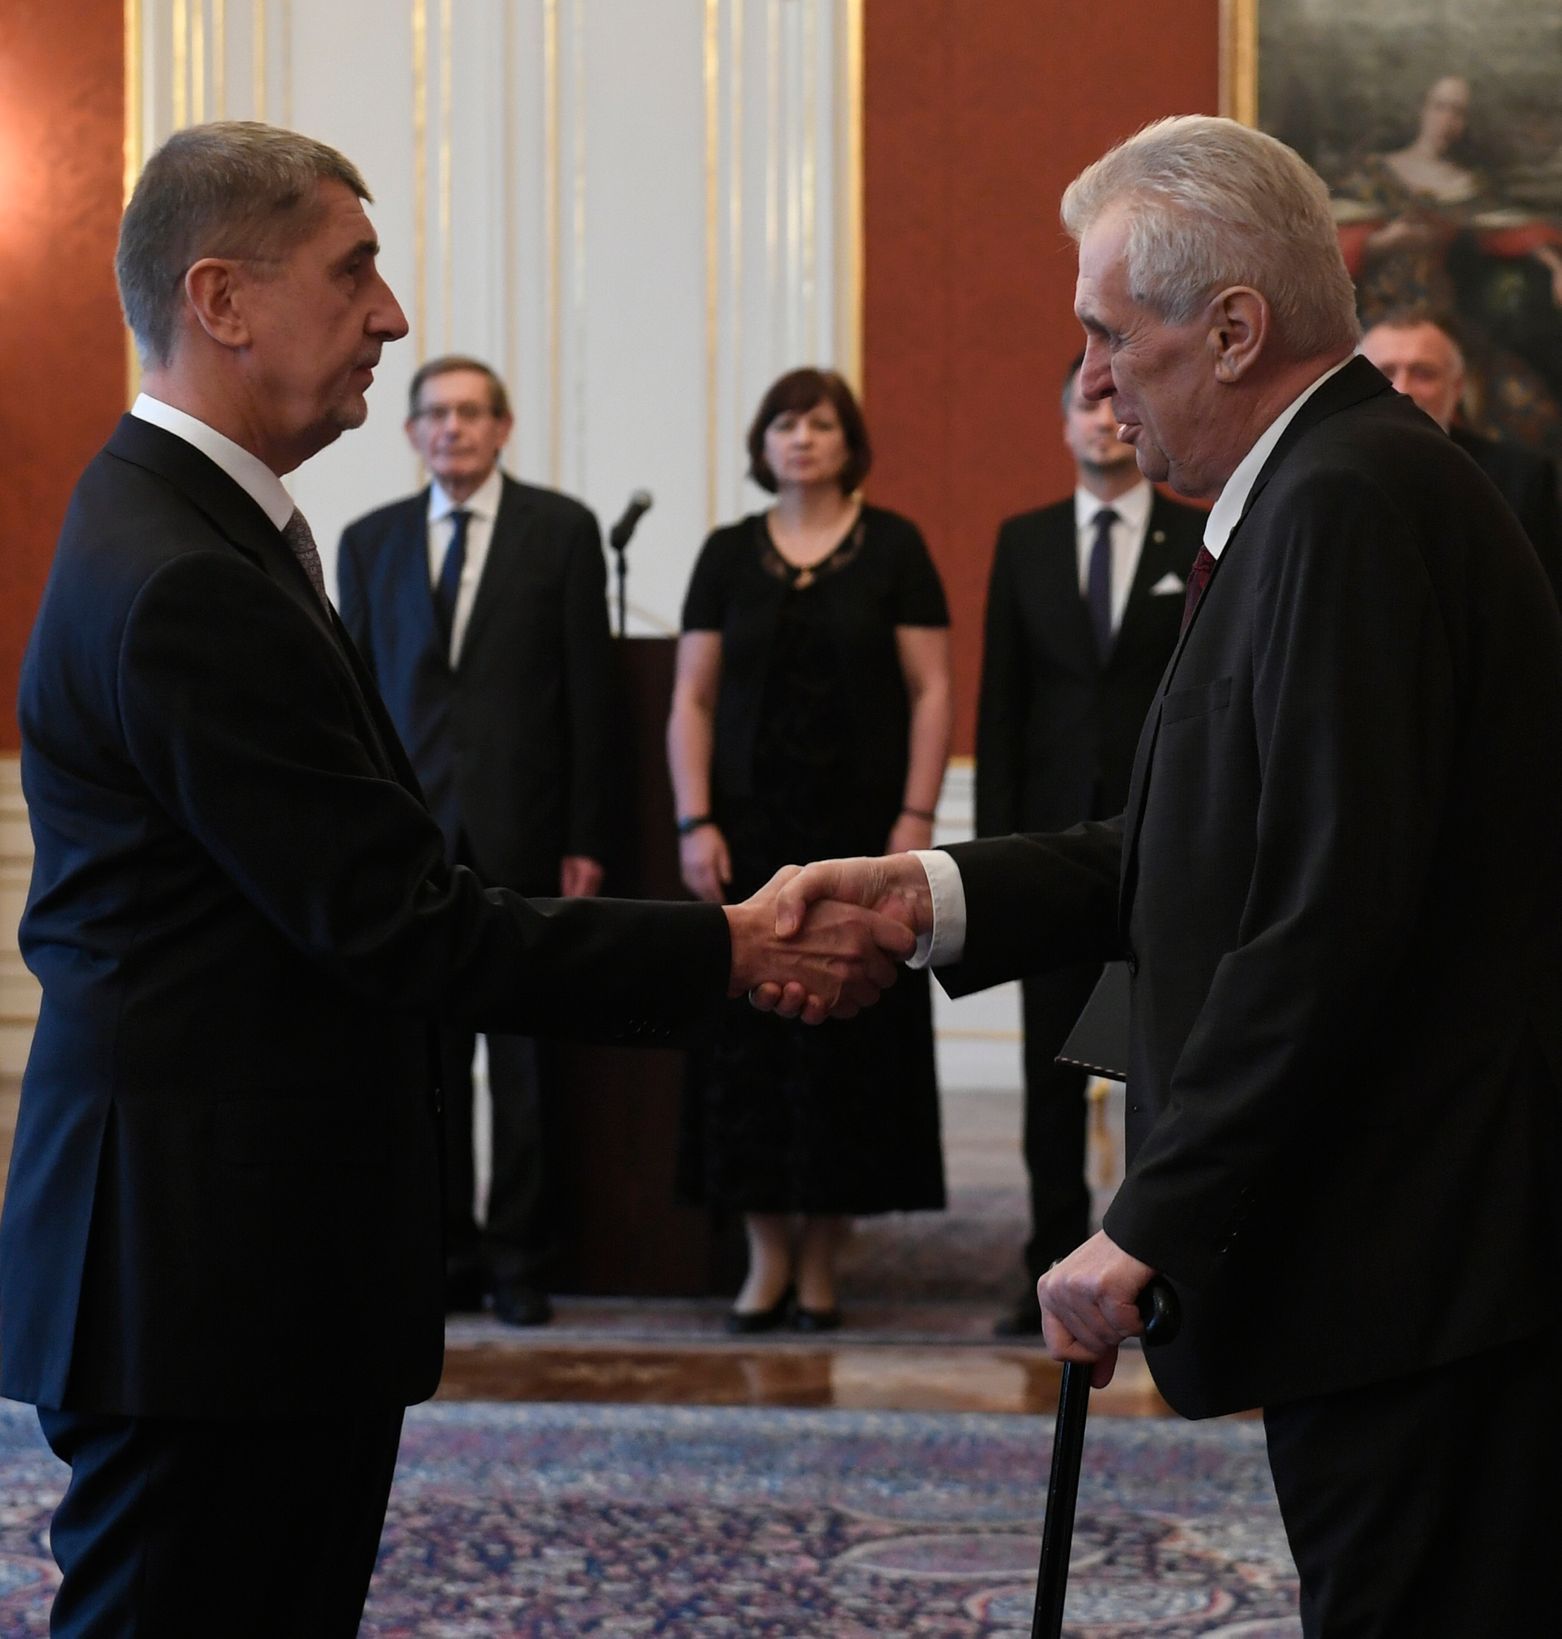 Miloš Zeman Andrej Babiš první jmenování premiérem prosinec 2017